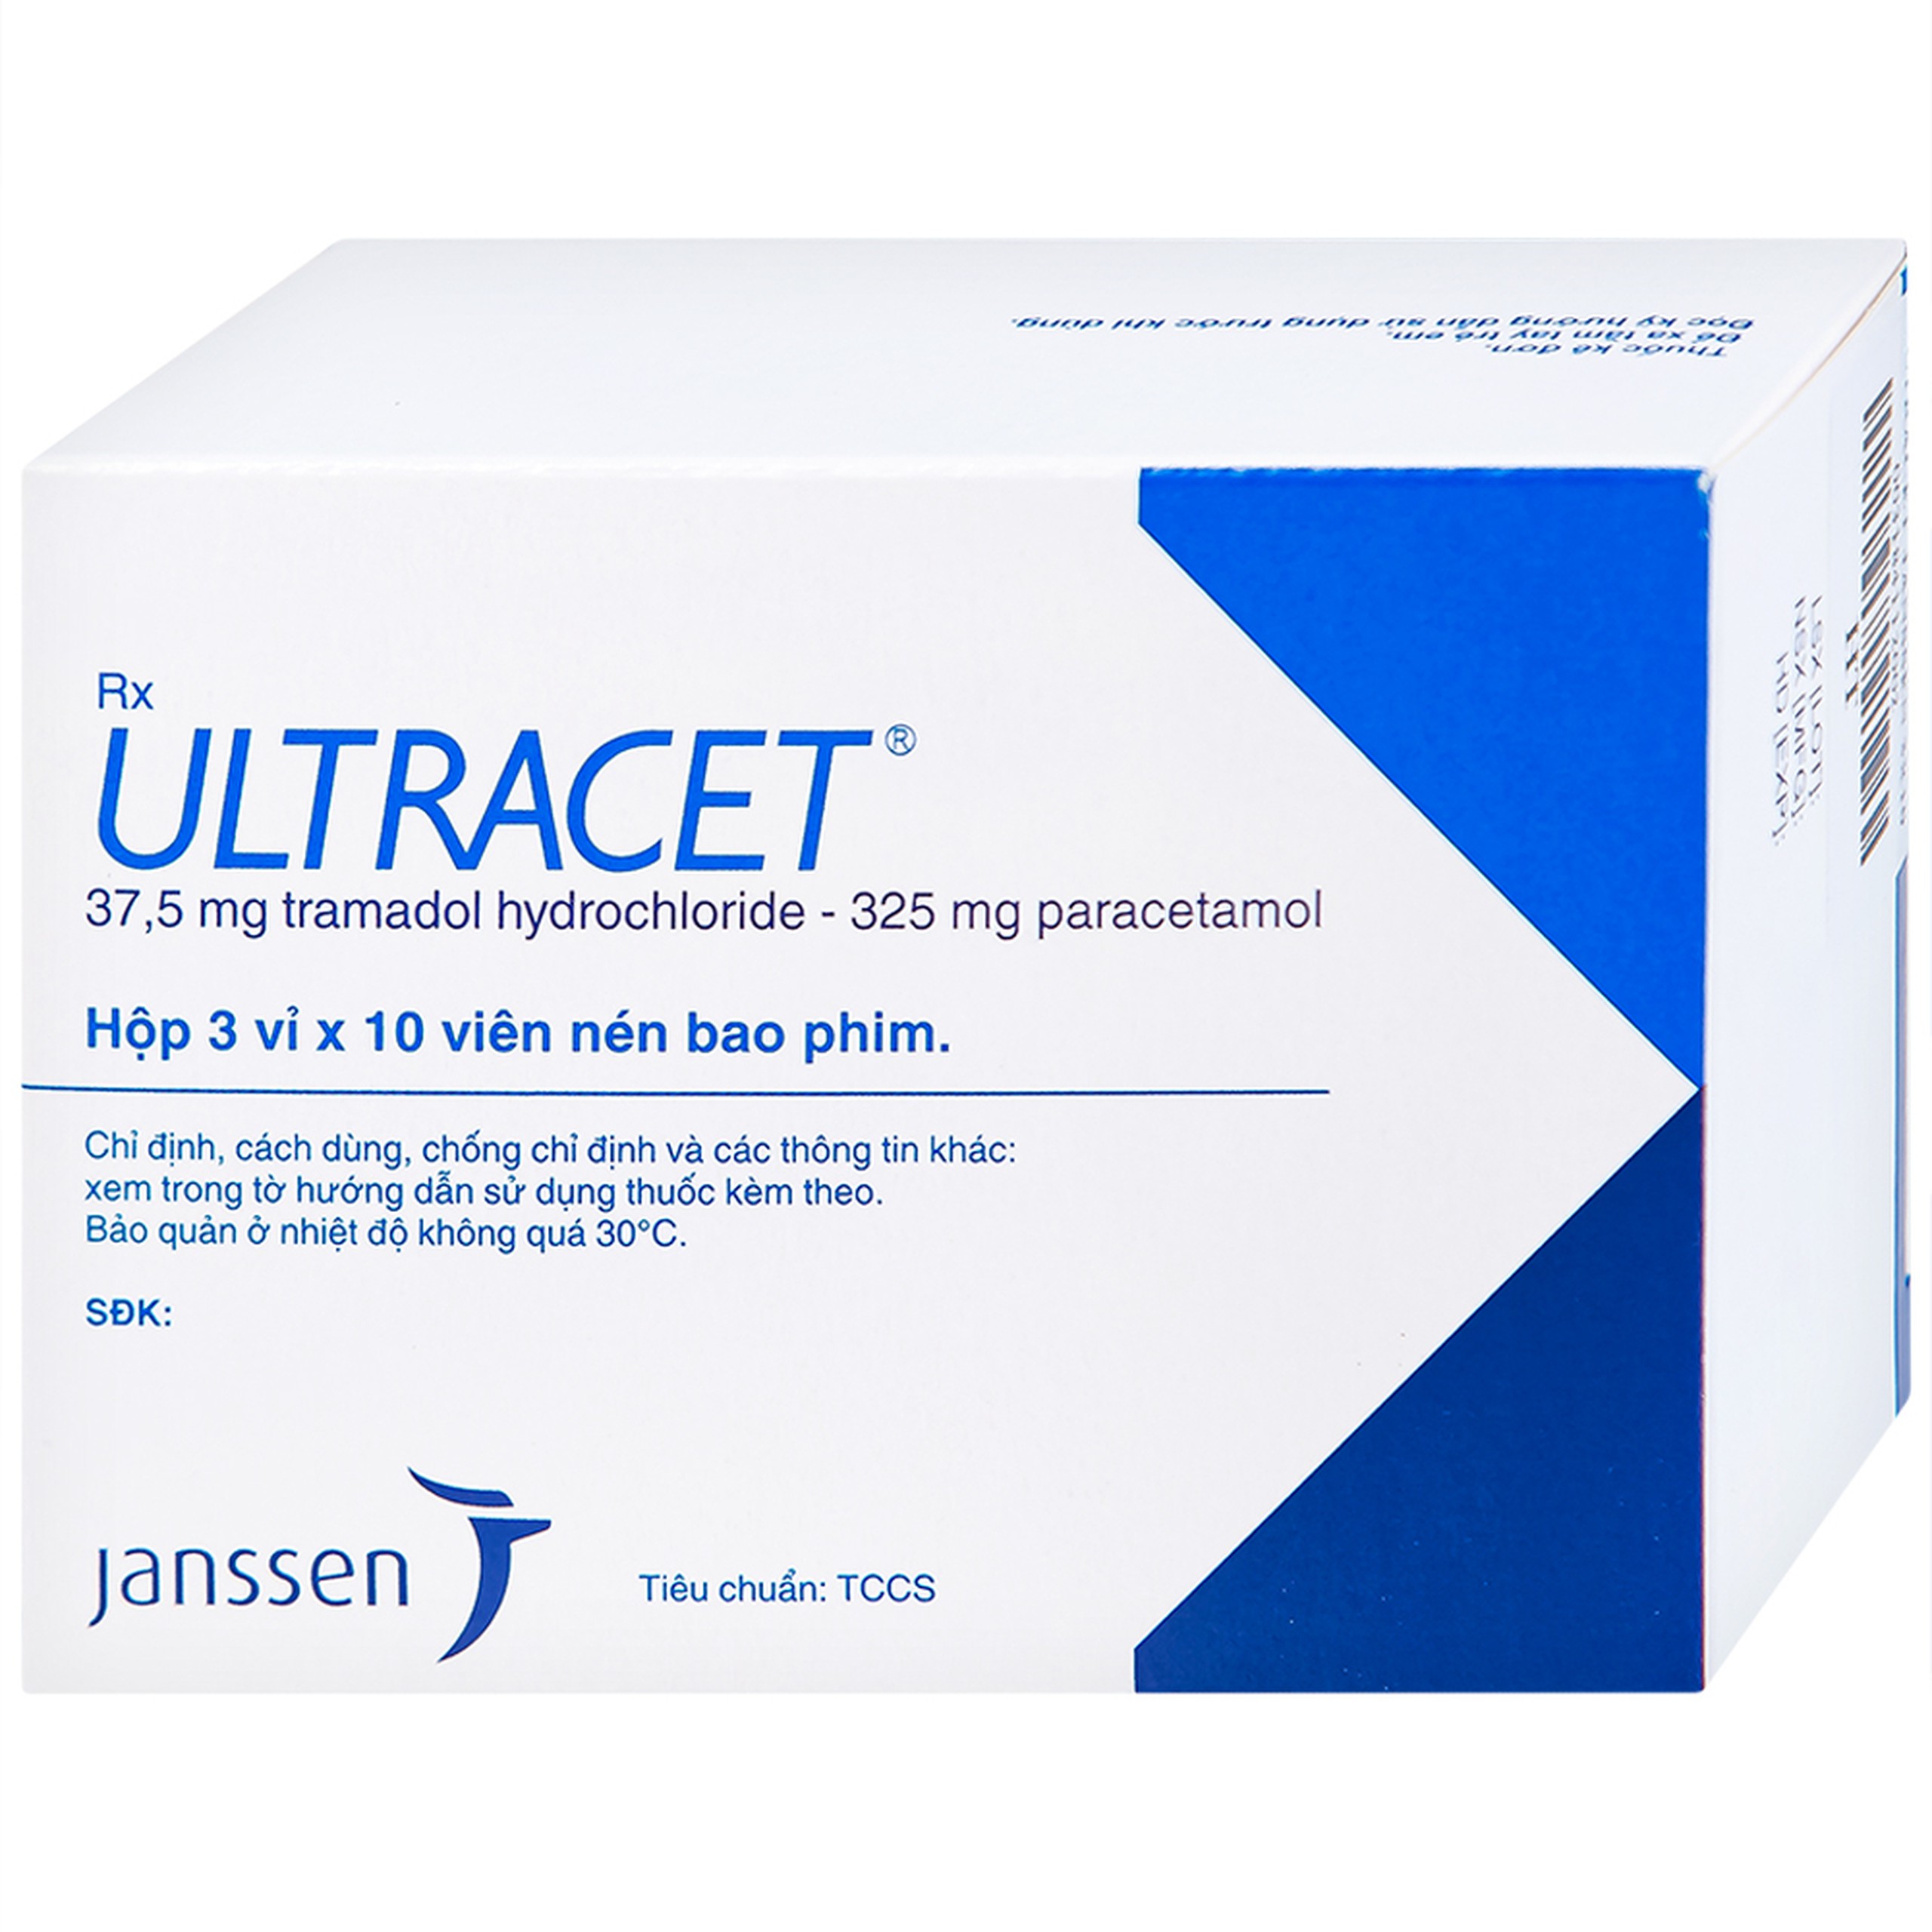 Thuốc Ultracet Janssen hỗ trợ điều trị cơn đau từ trung bình đến nặng (3 vỉ x 10 viên)